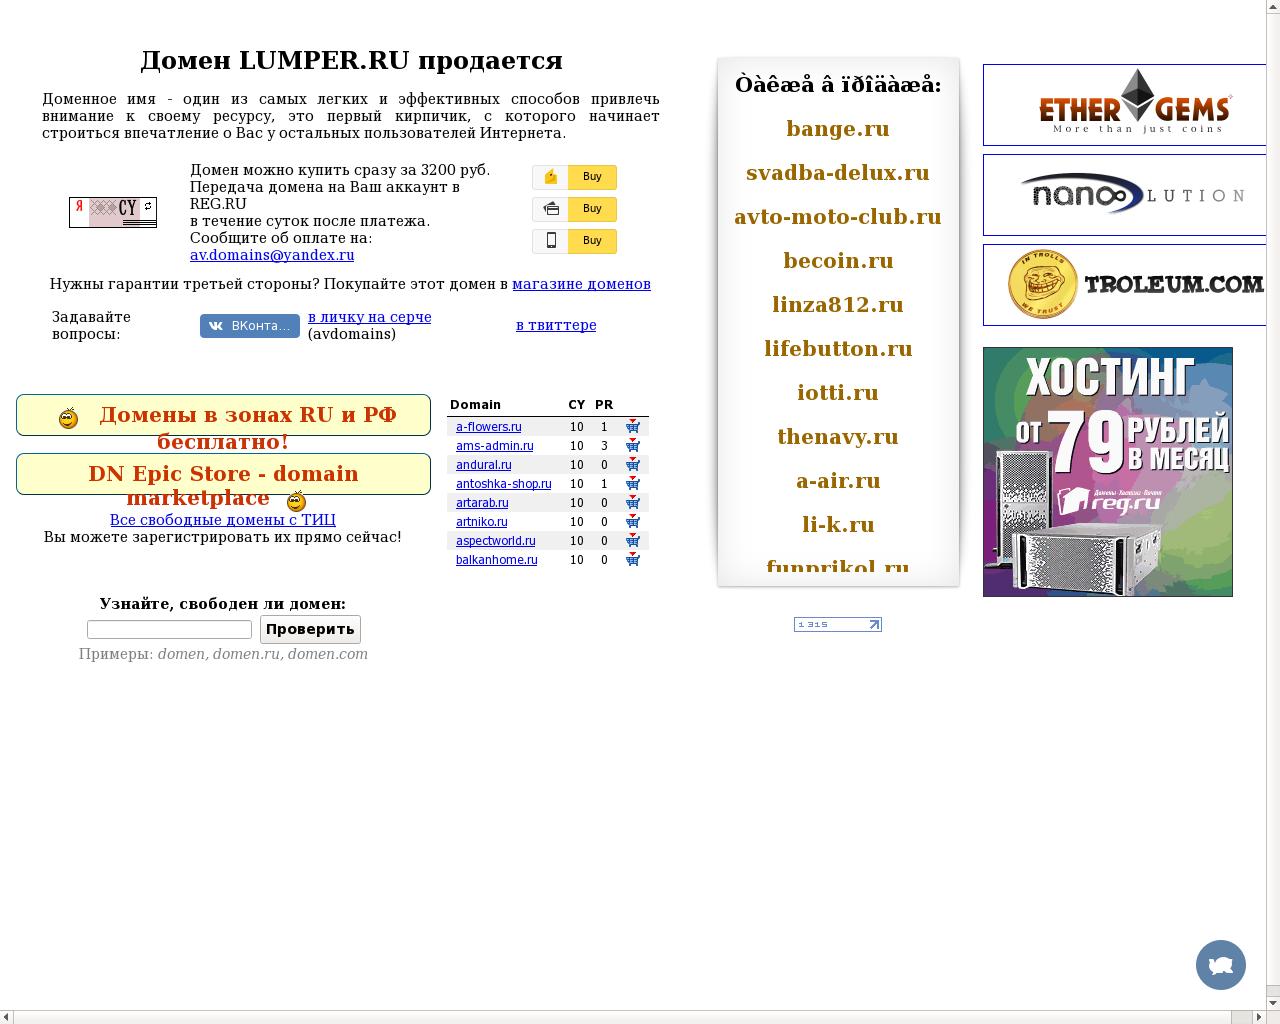 Изображение сайта lumper.ru в разрешении 1280x1024